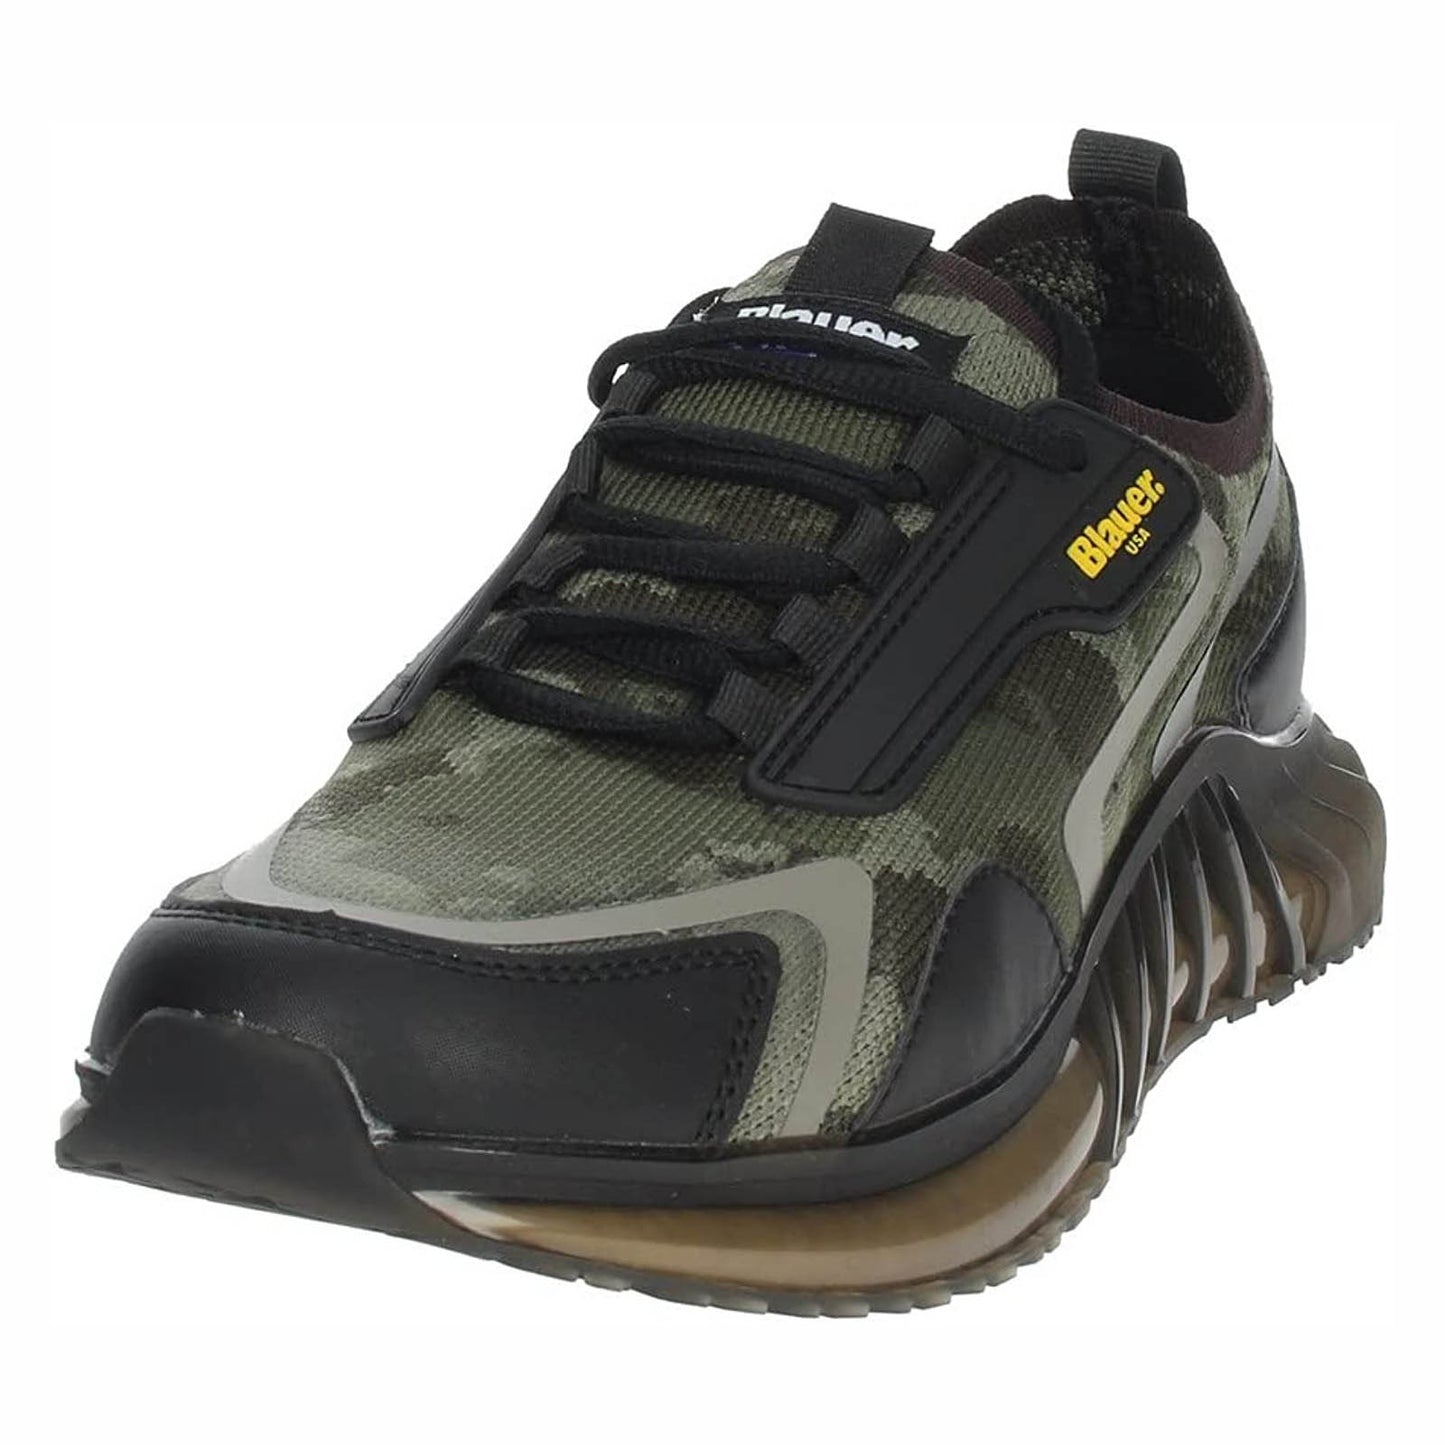 Blauer uomo sneakers Rush Military Green